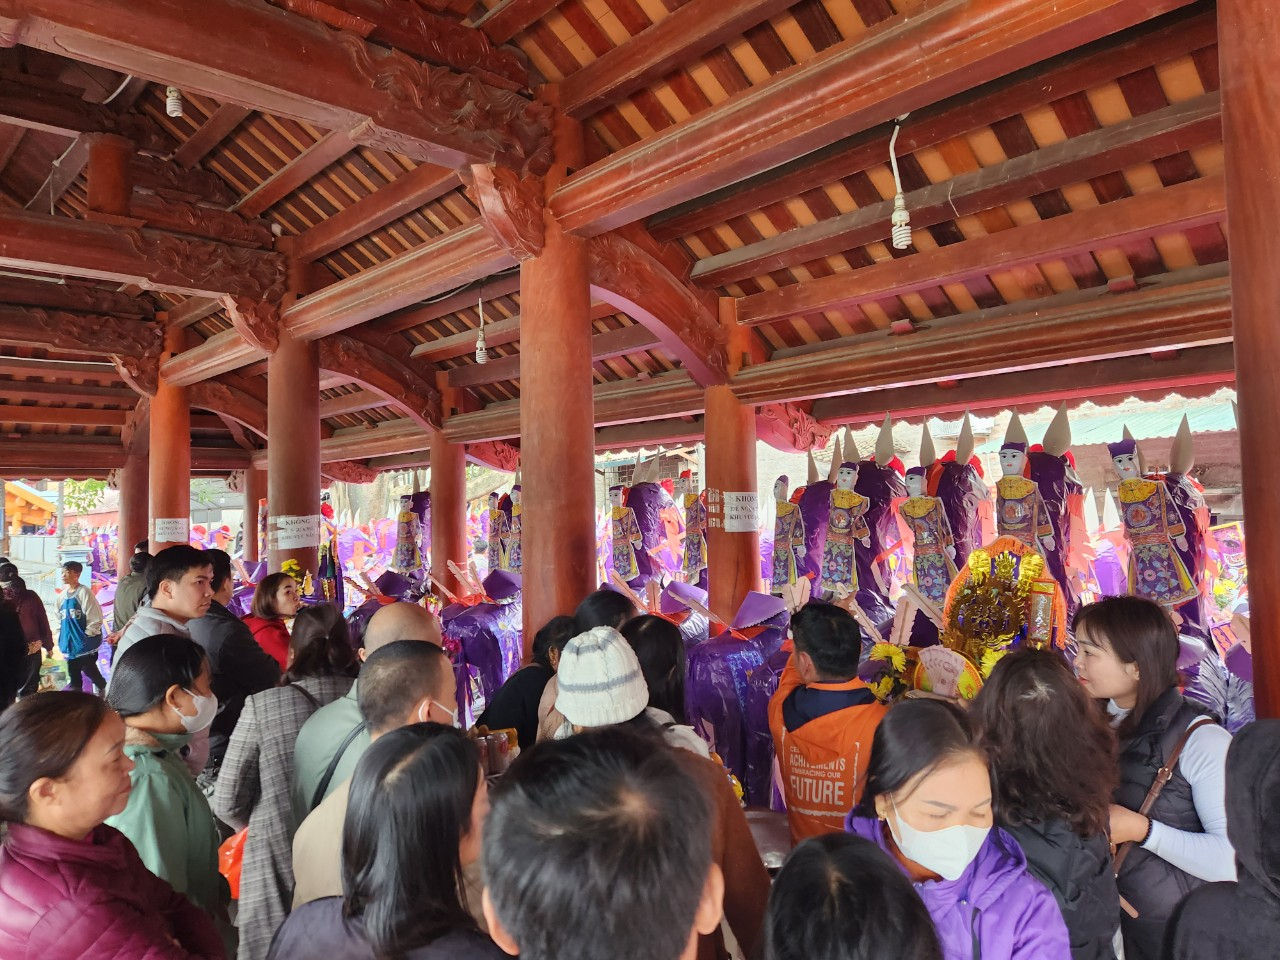 Nắm bắt nhu cầu của du khách thập phương khi về dâng lễ tại đền Bảo Hà, những năm gần đây, dịch vụ sắm lễ tại đền (nhất là cỗ ngựa tím, quần áo) đã trở nên phổ biến.